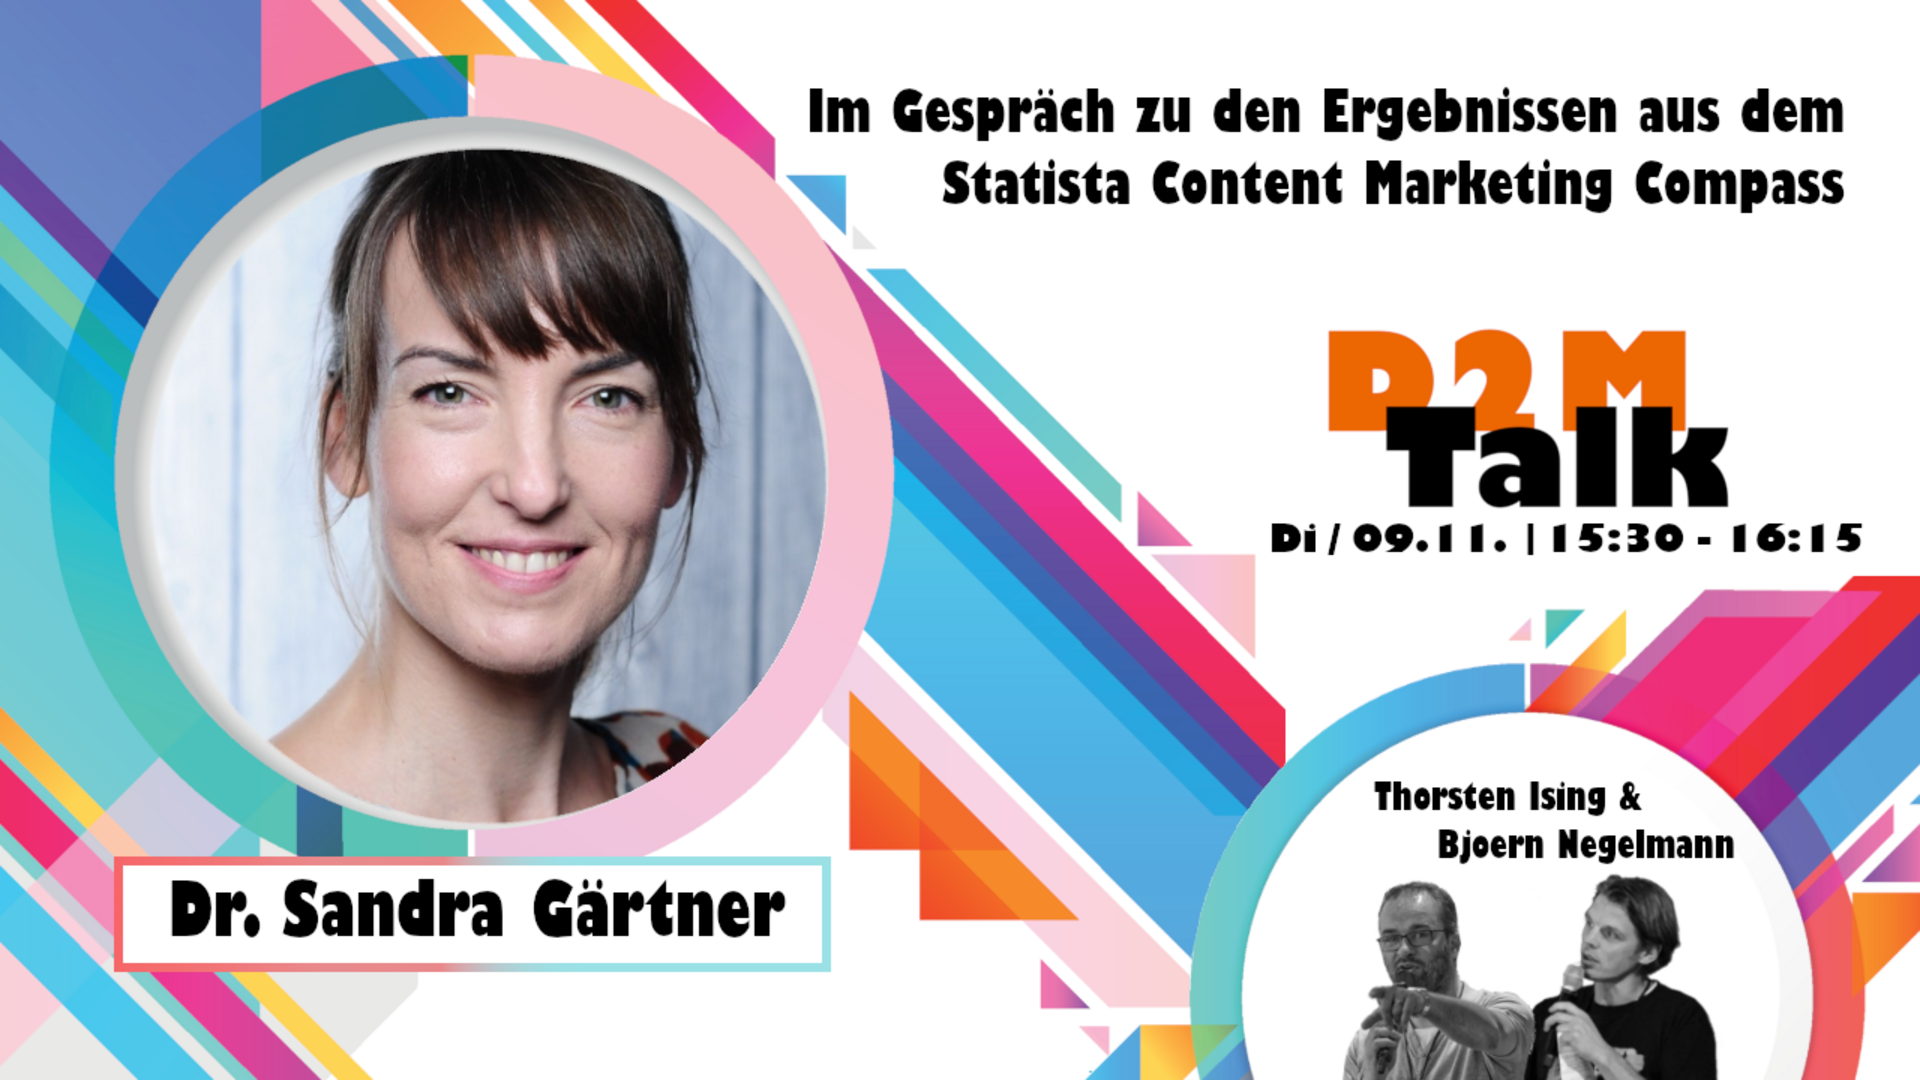 Im Gespräch mit Dr. Sandra Gärtner zu den Ergebnissen des Statista Content Marketing Compass